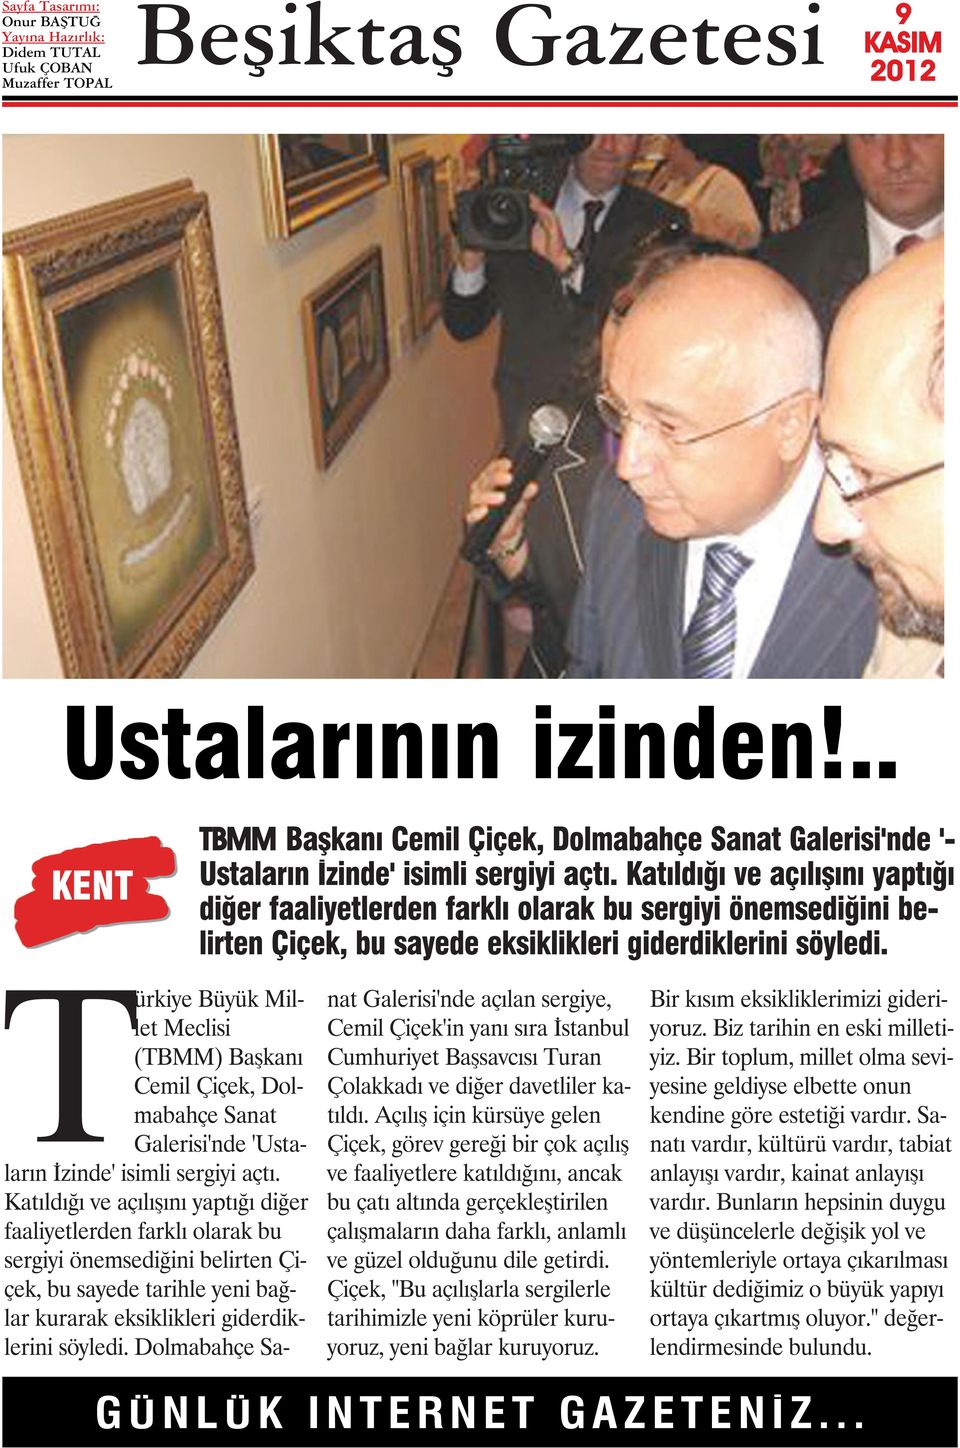 Türkiye Büyük Millet Meclisi (TBMM) Başkanı Cemil Çiçek, Dolmabahçe Sanat Galerisi'nde 'Ustaların İzinde' isimli sergiyi açtı.